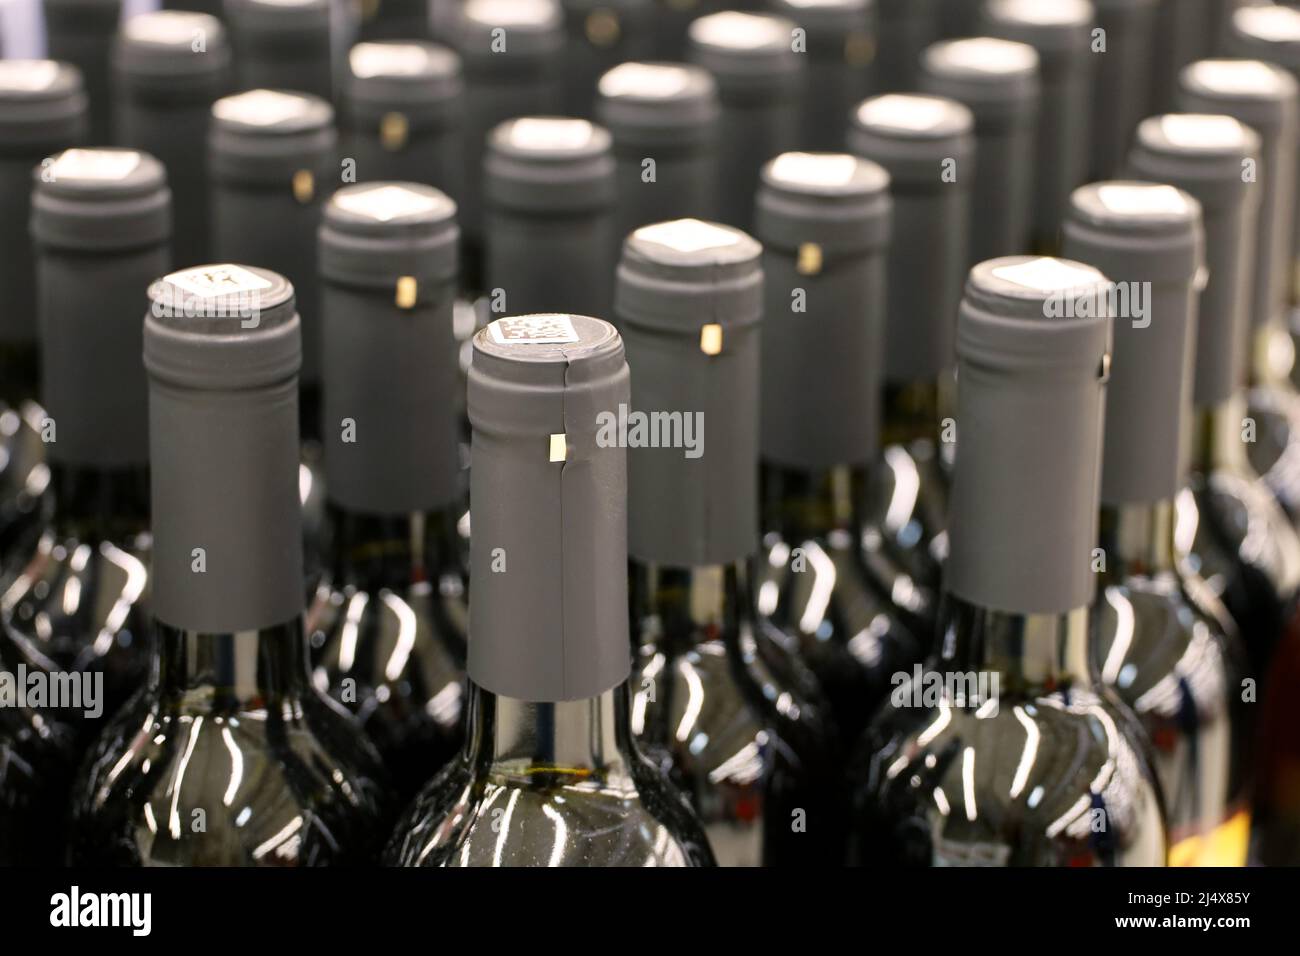 Flaschen Rotwein in einer Reihe, selektiver Fokus. Spirituosengeschäft, Konzept zur Weinherstellung Stockfoto